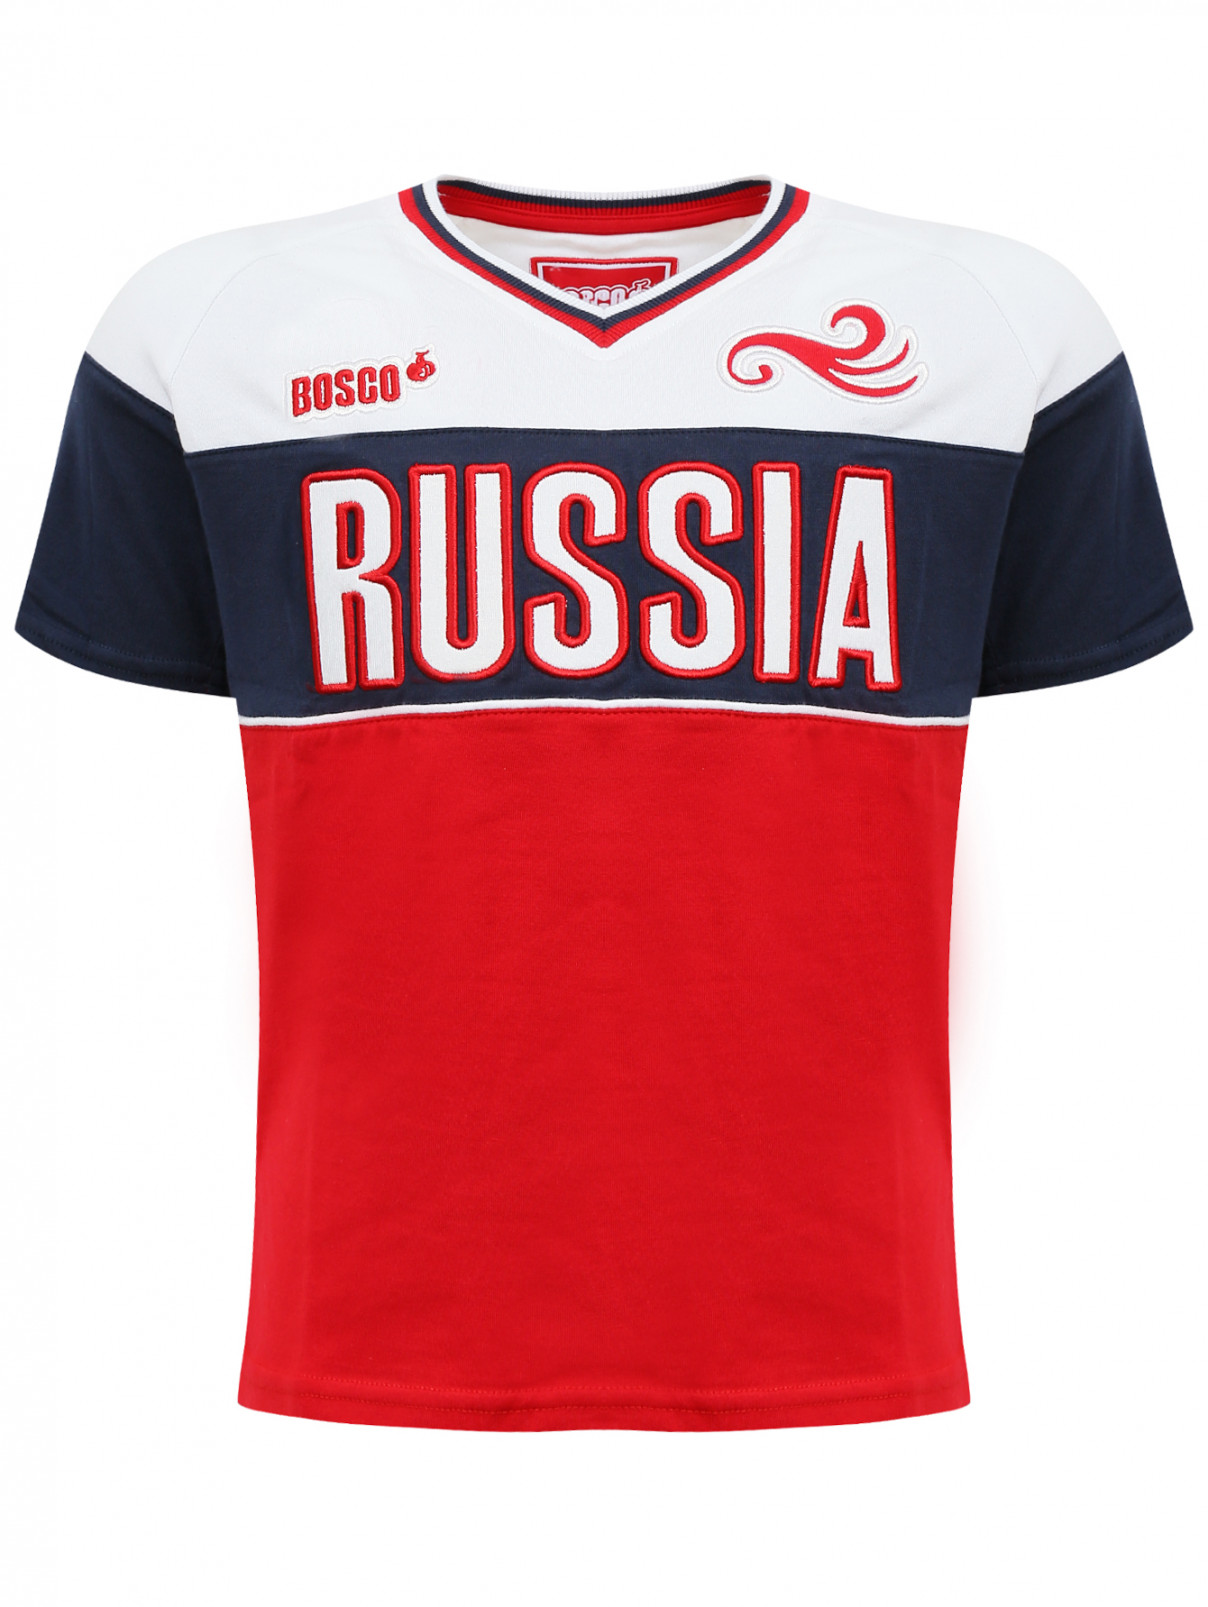 Футболка из хлопка с вышивкой Sochi 2014  –  Общий вид  – Цвет:  Мультиколор